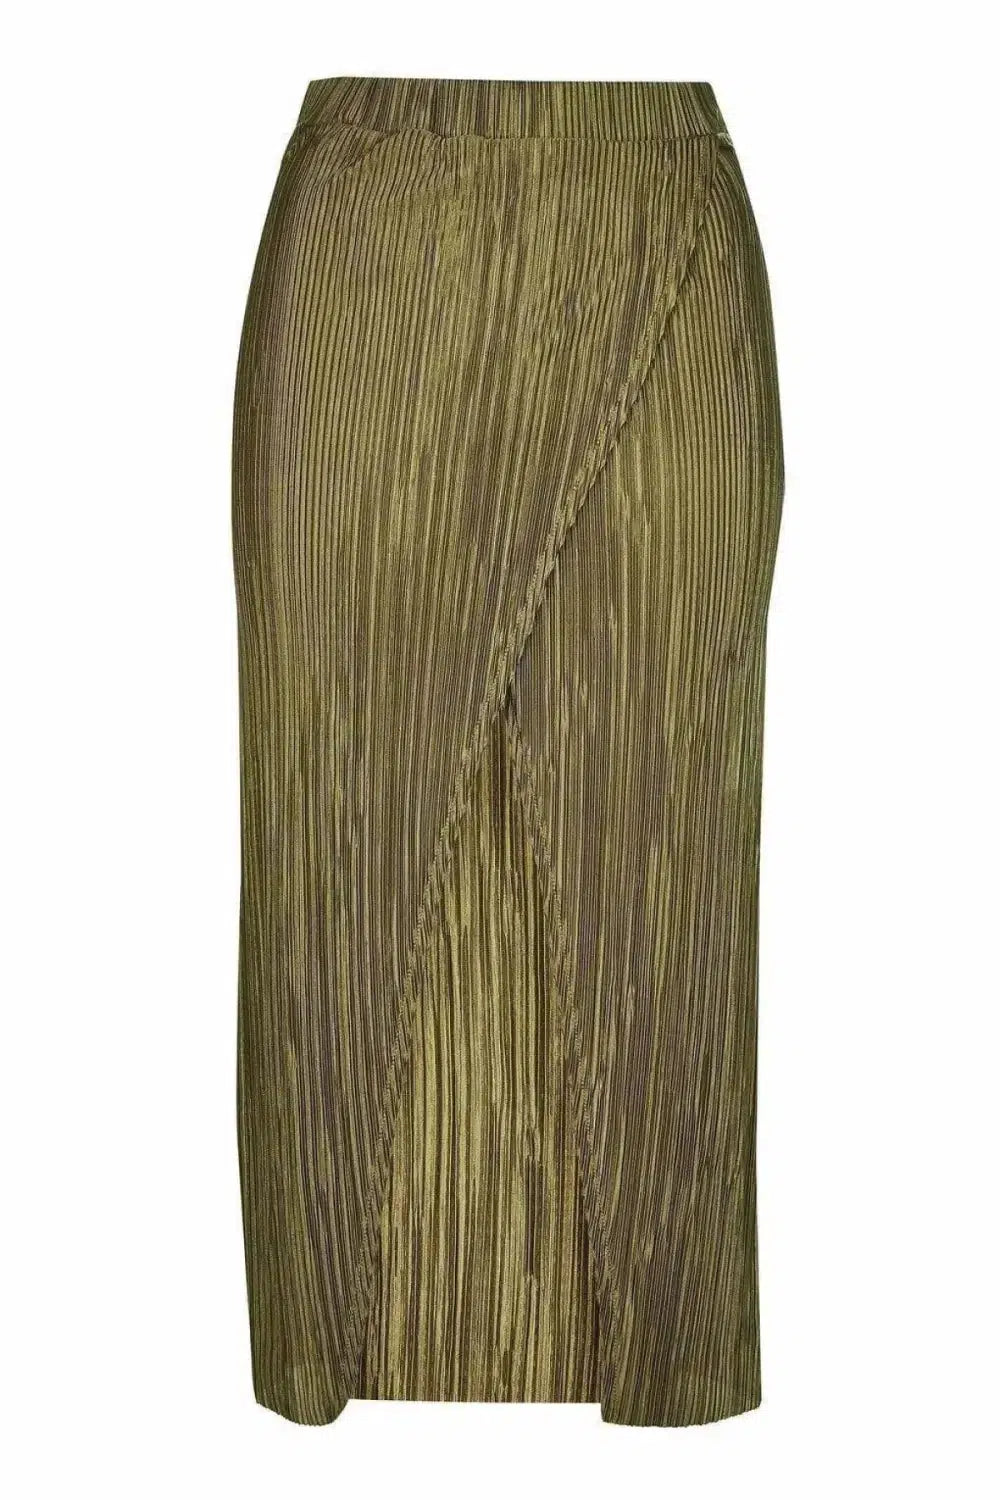 Topshop Plisse Wrap Midi Skirt